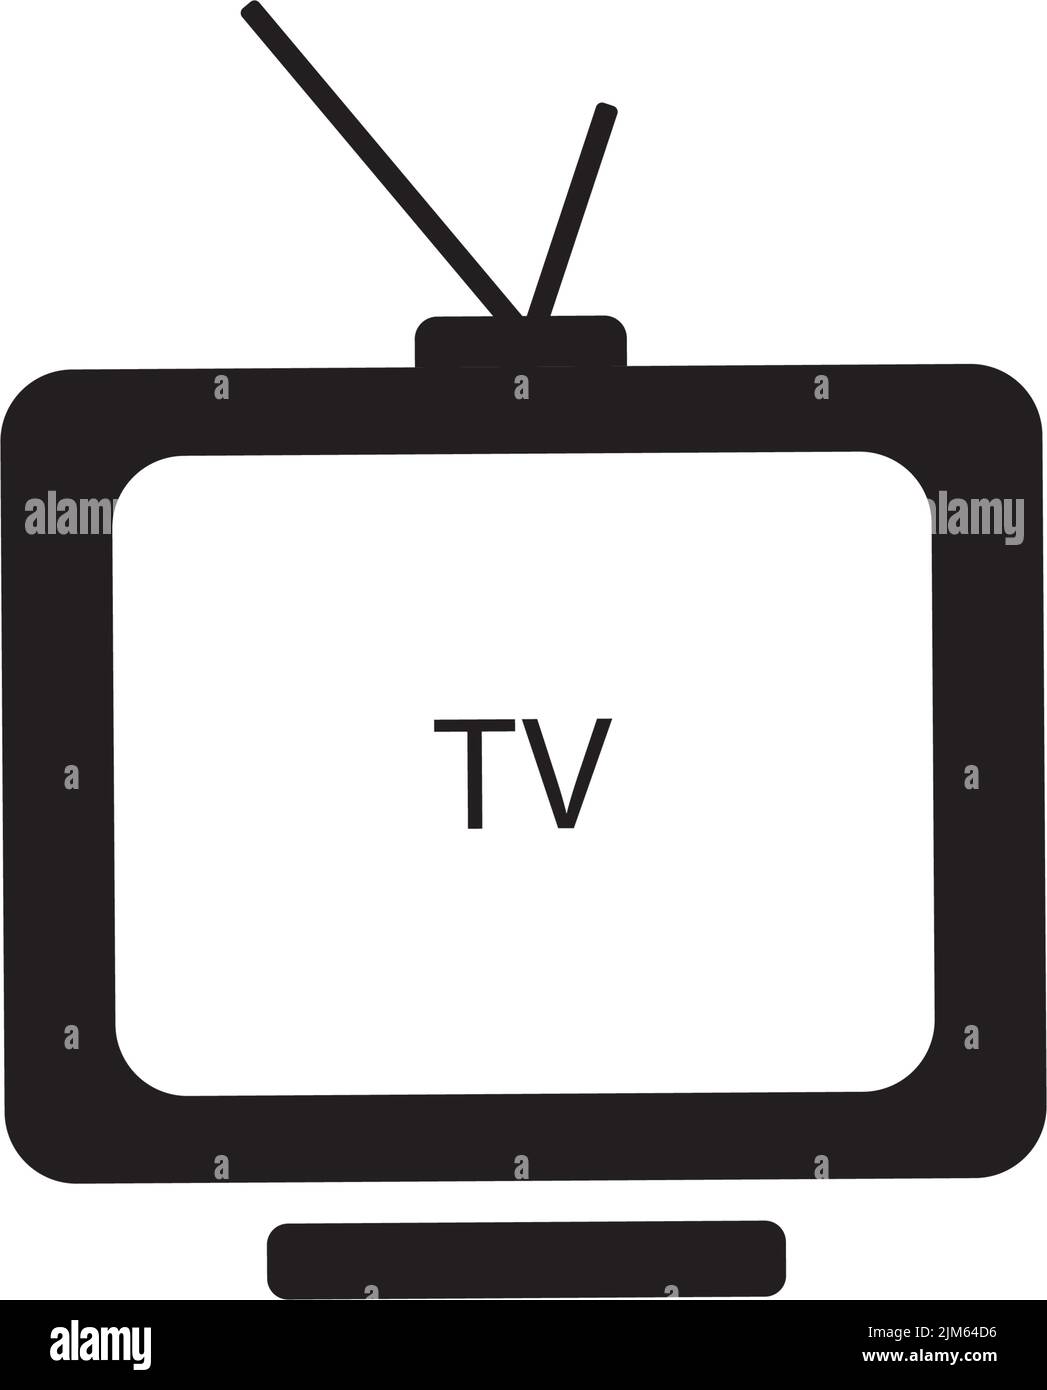 television icon logo vector design Stock Vector